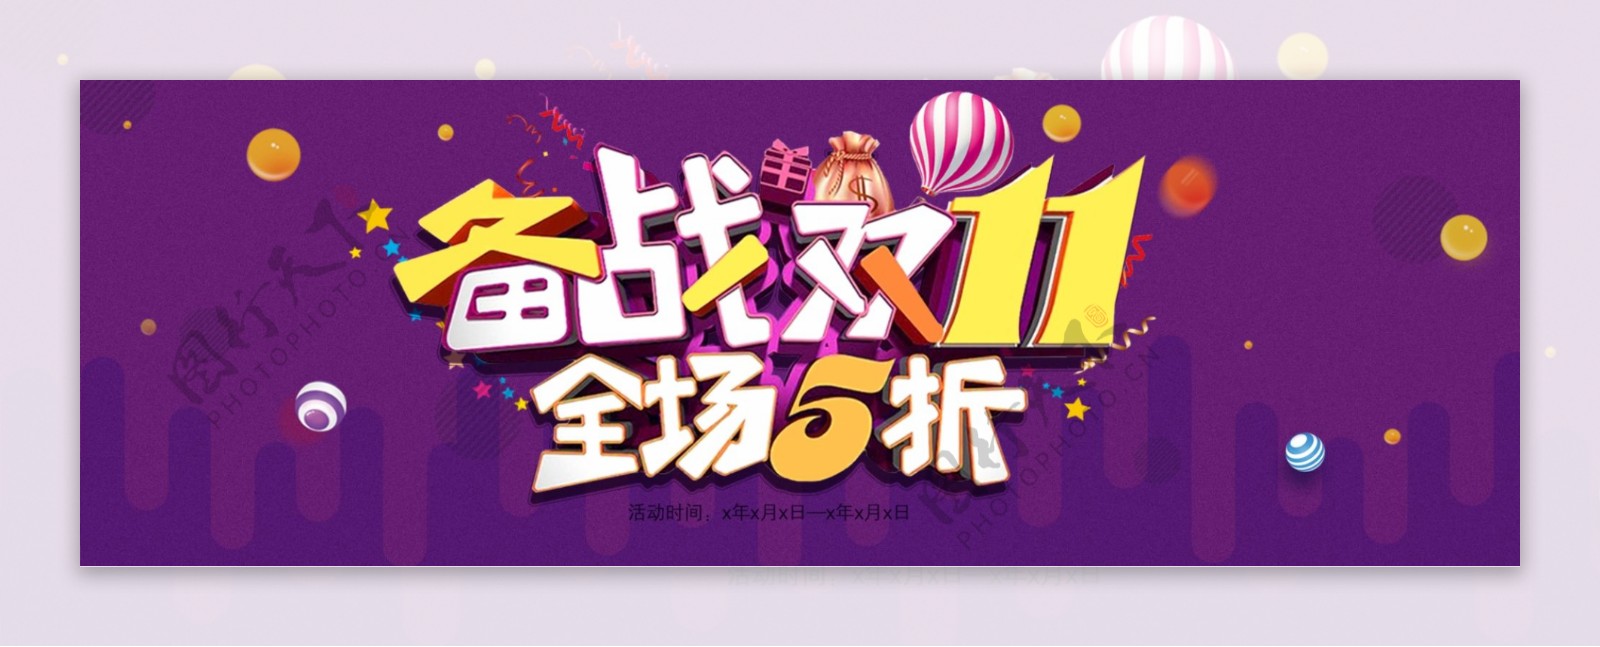 紫色炫酷备战双十一气球礼物淘宝天猫满减包邮促销海报banner